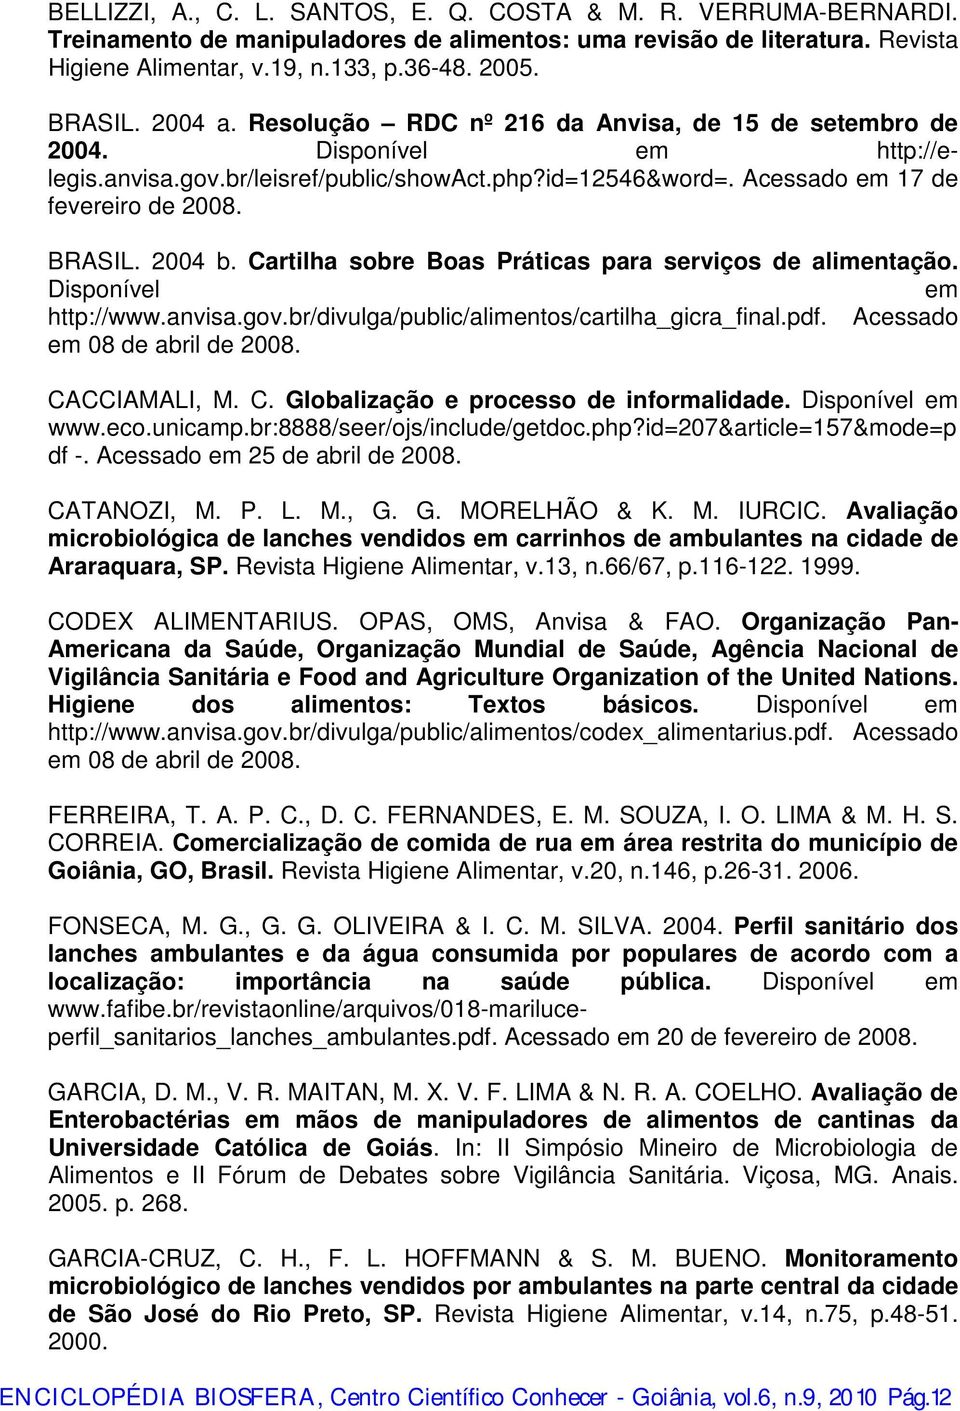 2004 b. Cartilha sobre Boas Práticas para serviços de alimentação. Disponível em http://www.anvisa.gov.br/divulga/public/alimentos/cartilha_gicra_final.pdf. Acessado em 08 de abril de 2008.